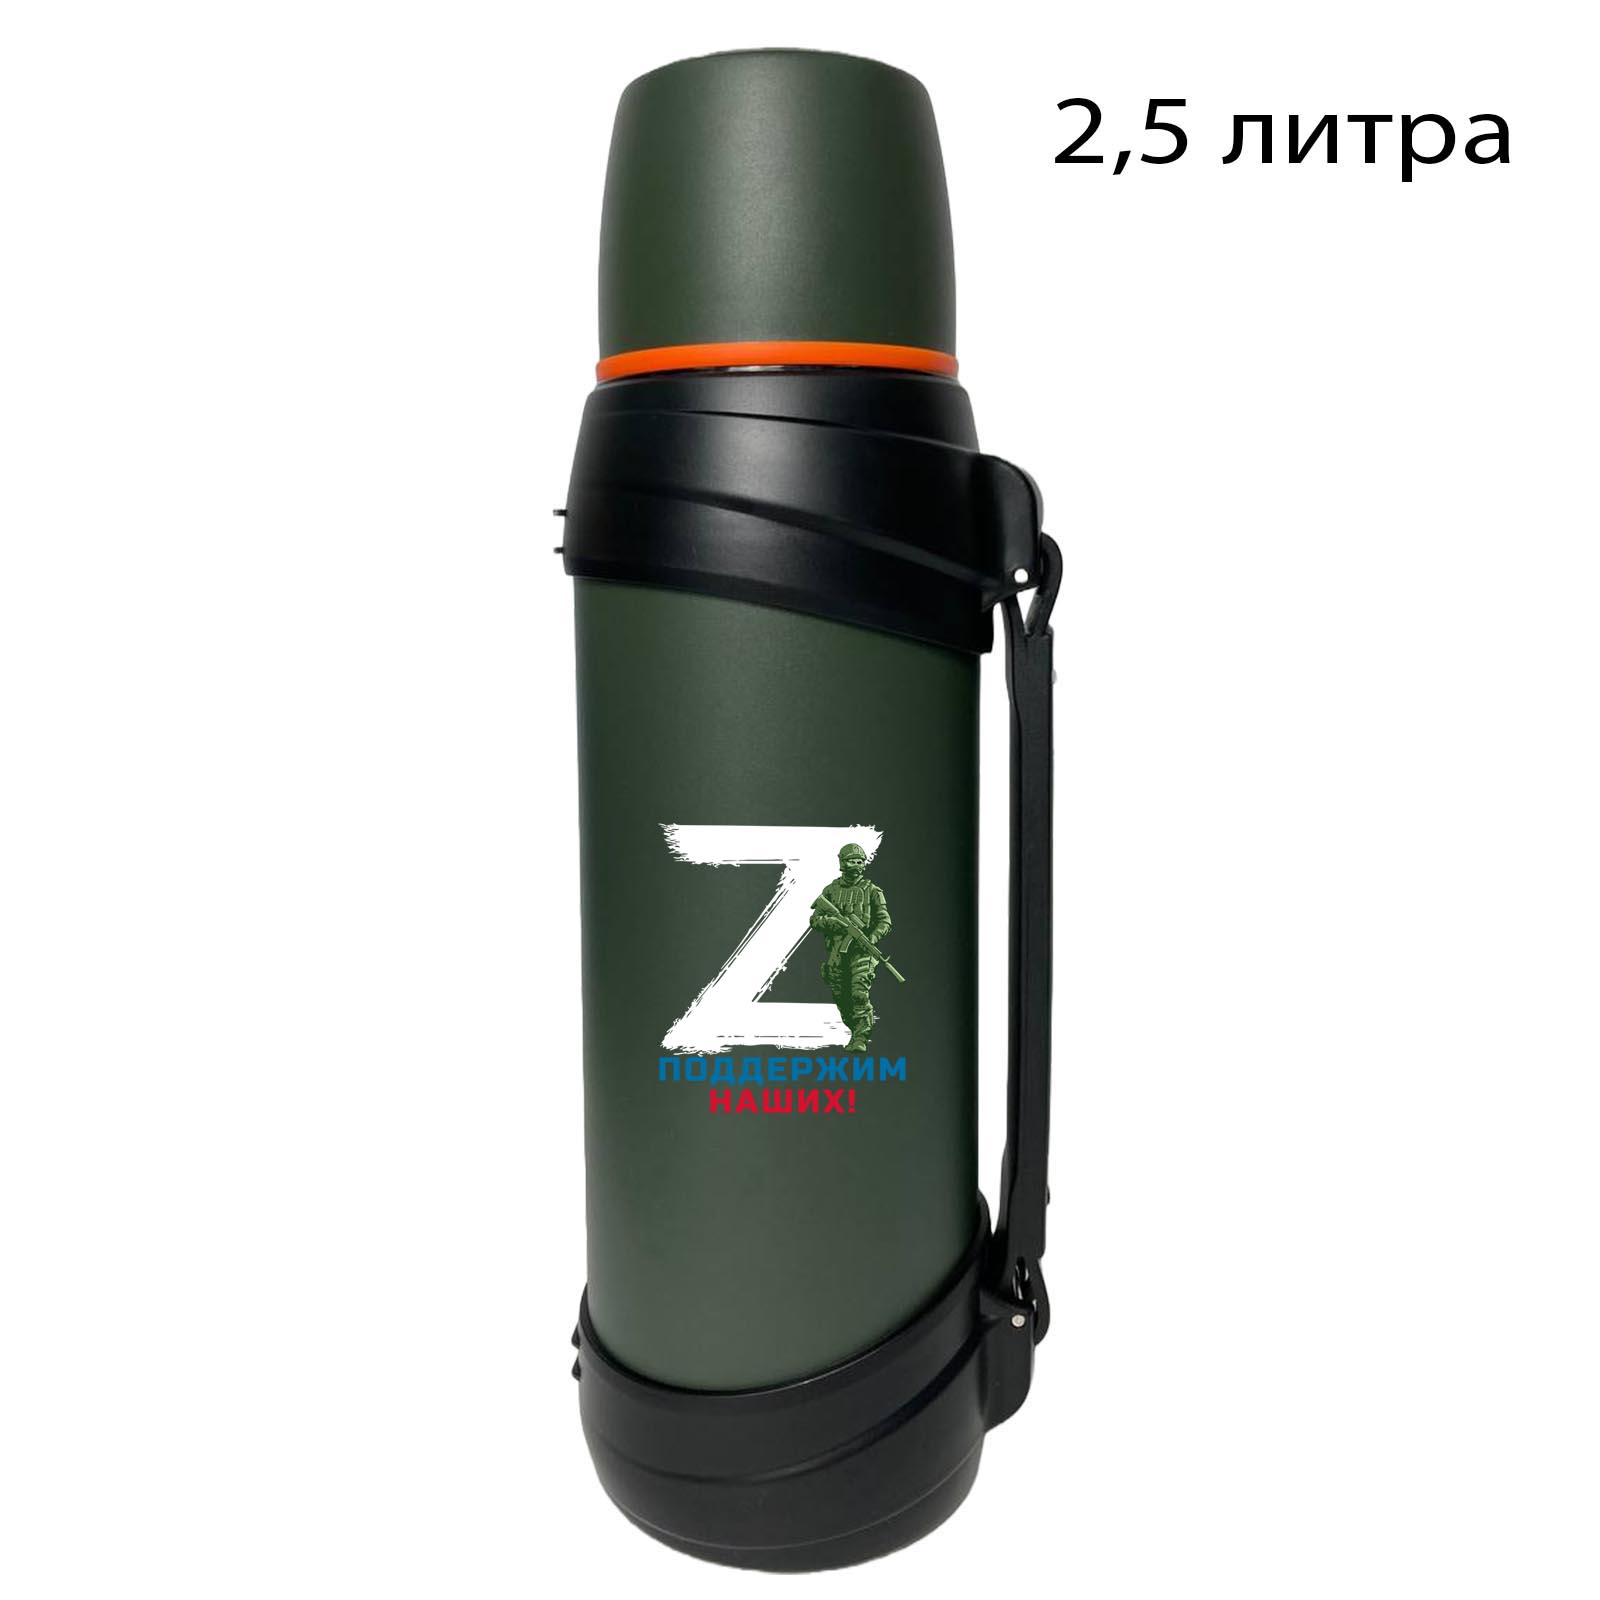 Купить армейский надежный термос с литерой Z онлайн